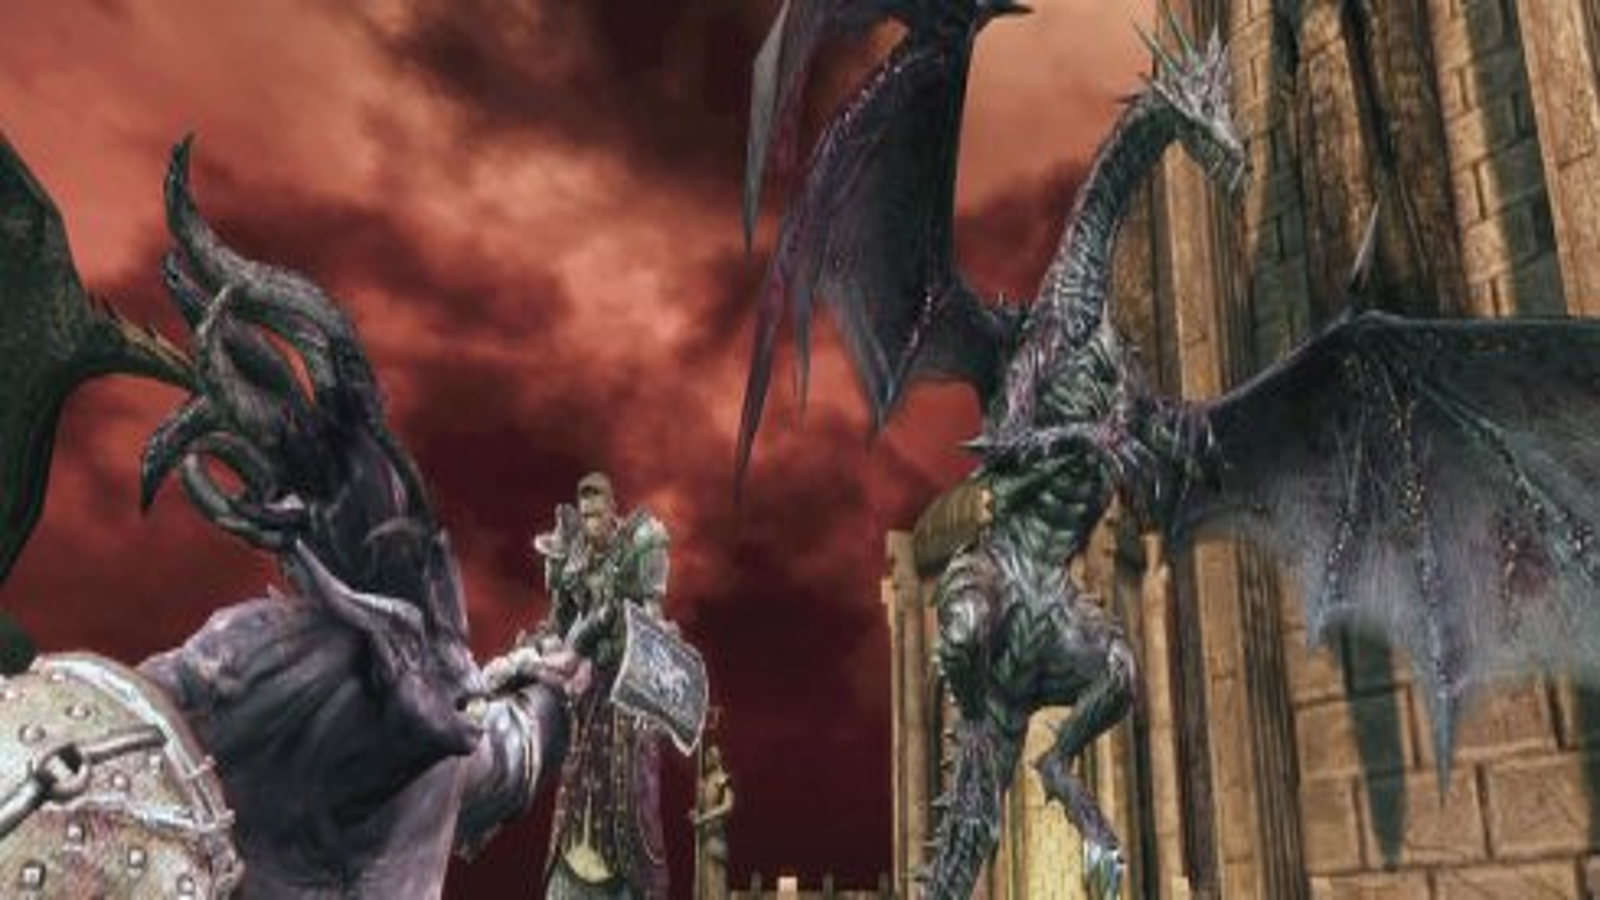 Dragon Age: Origins- Darkspawn Chronicles